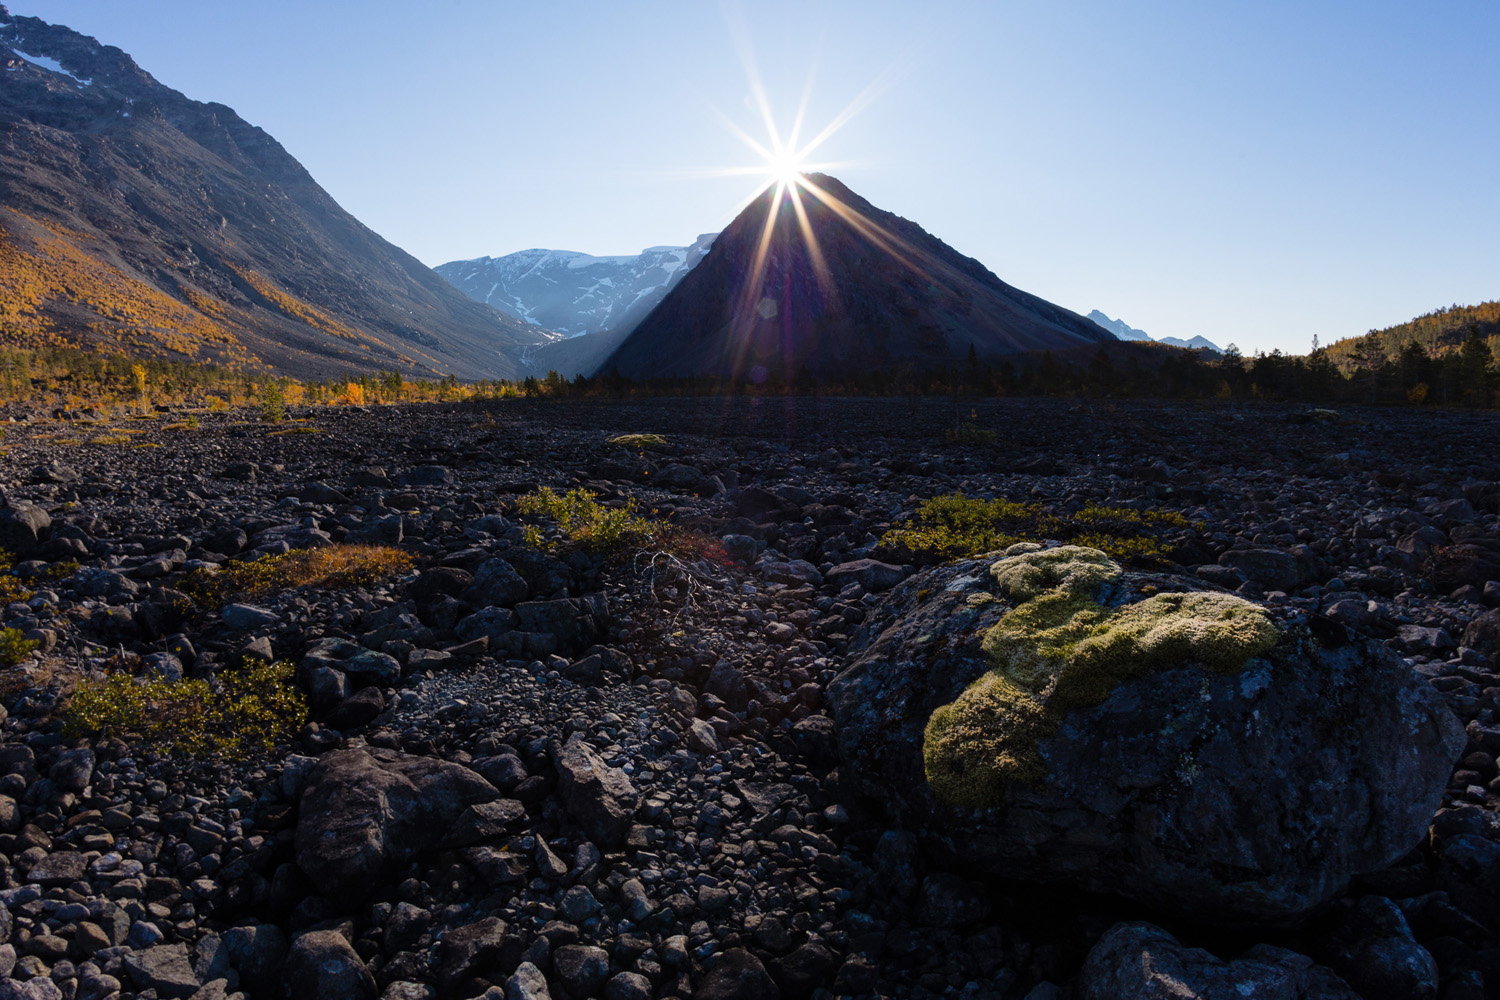 vallée glaciaire dans les Alpes de Lyngen, en Norvège, pendant un voyage photo en automne